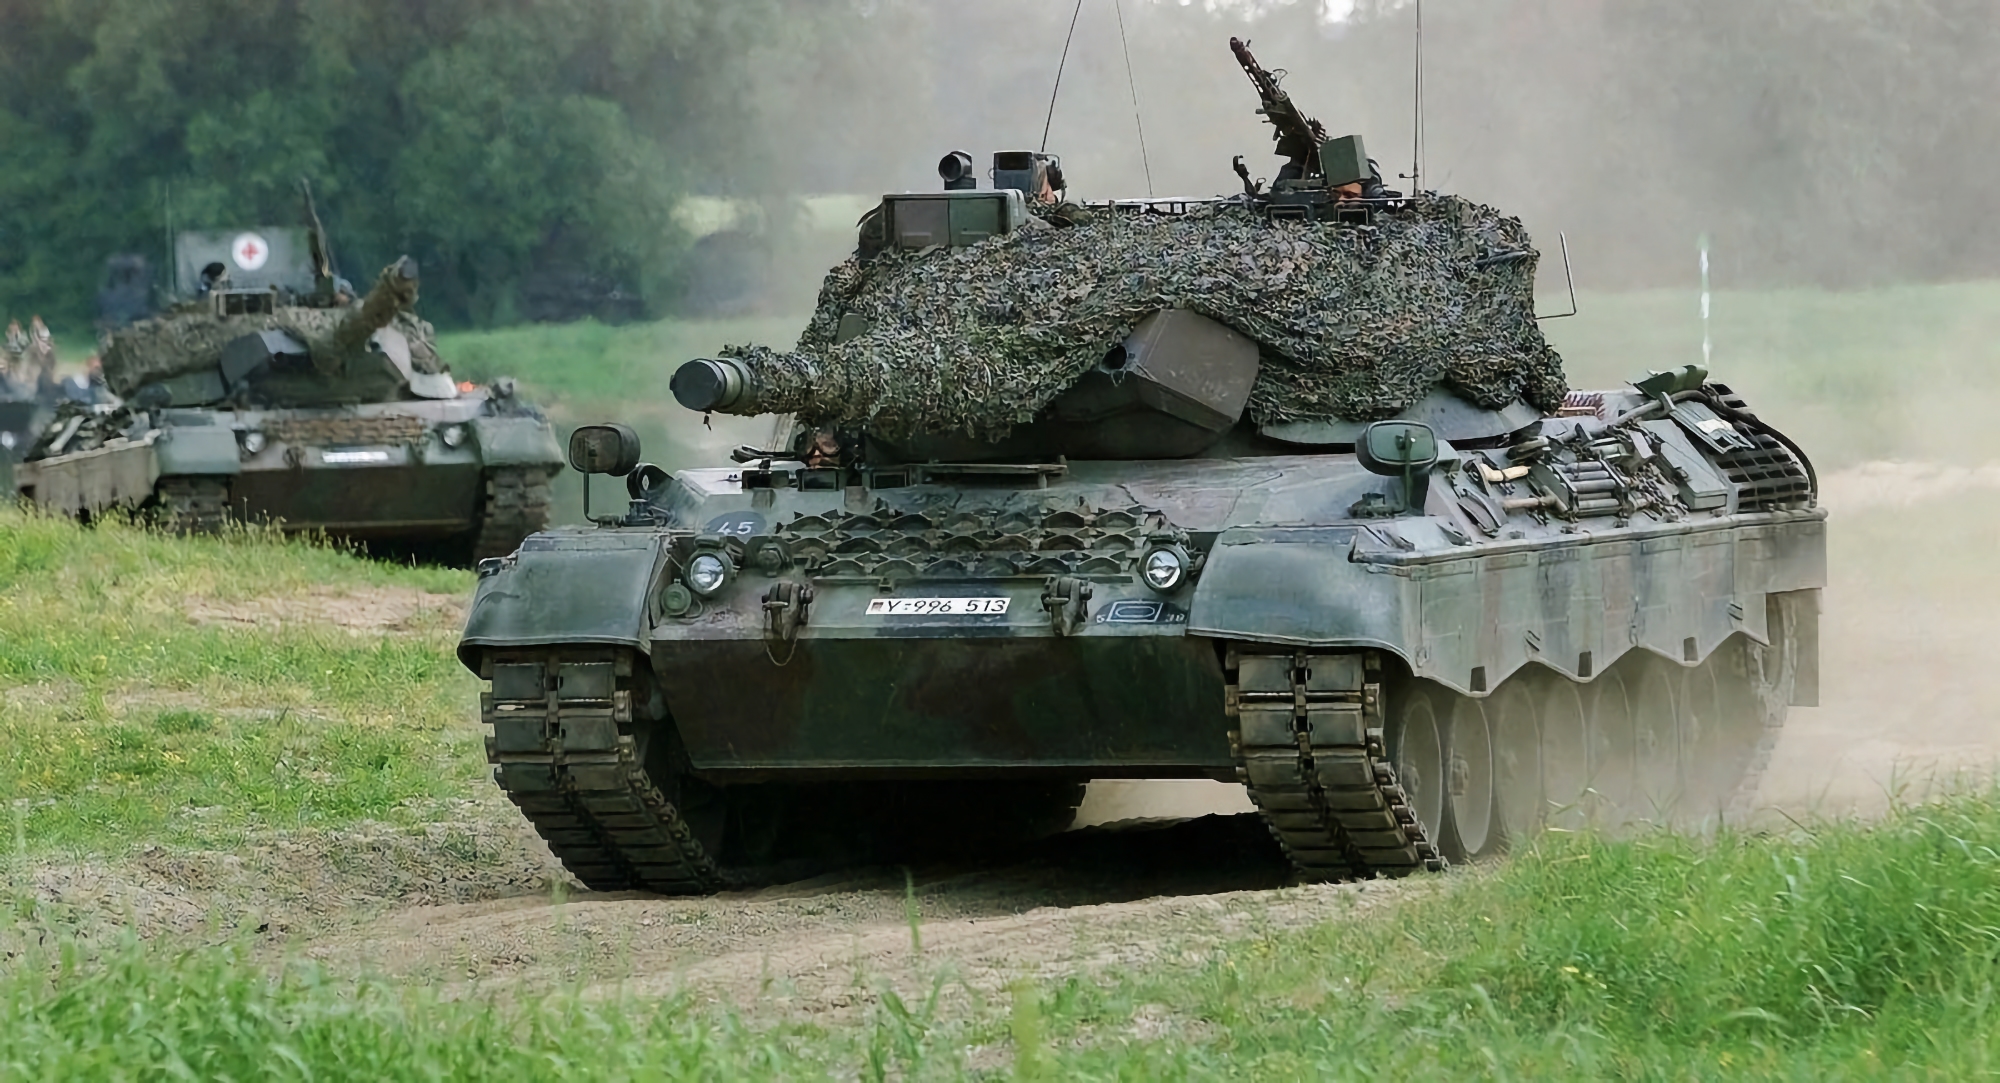 Leopard 1A5 tanks, Bandvagn 206 terreinwagens, VECTOR UAV's en Zetros vrachtwagens: Duitsland overhandigt Oekraïne een nieuw wapenpakket